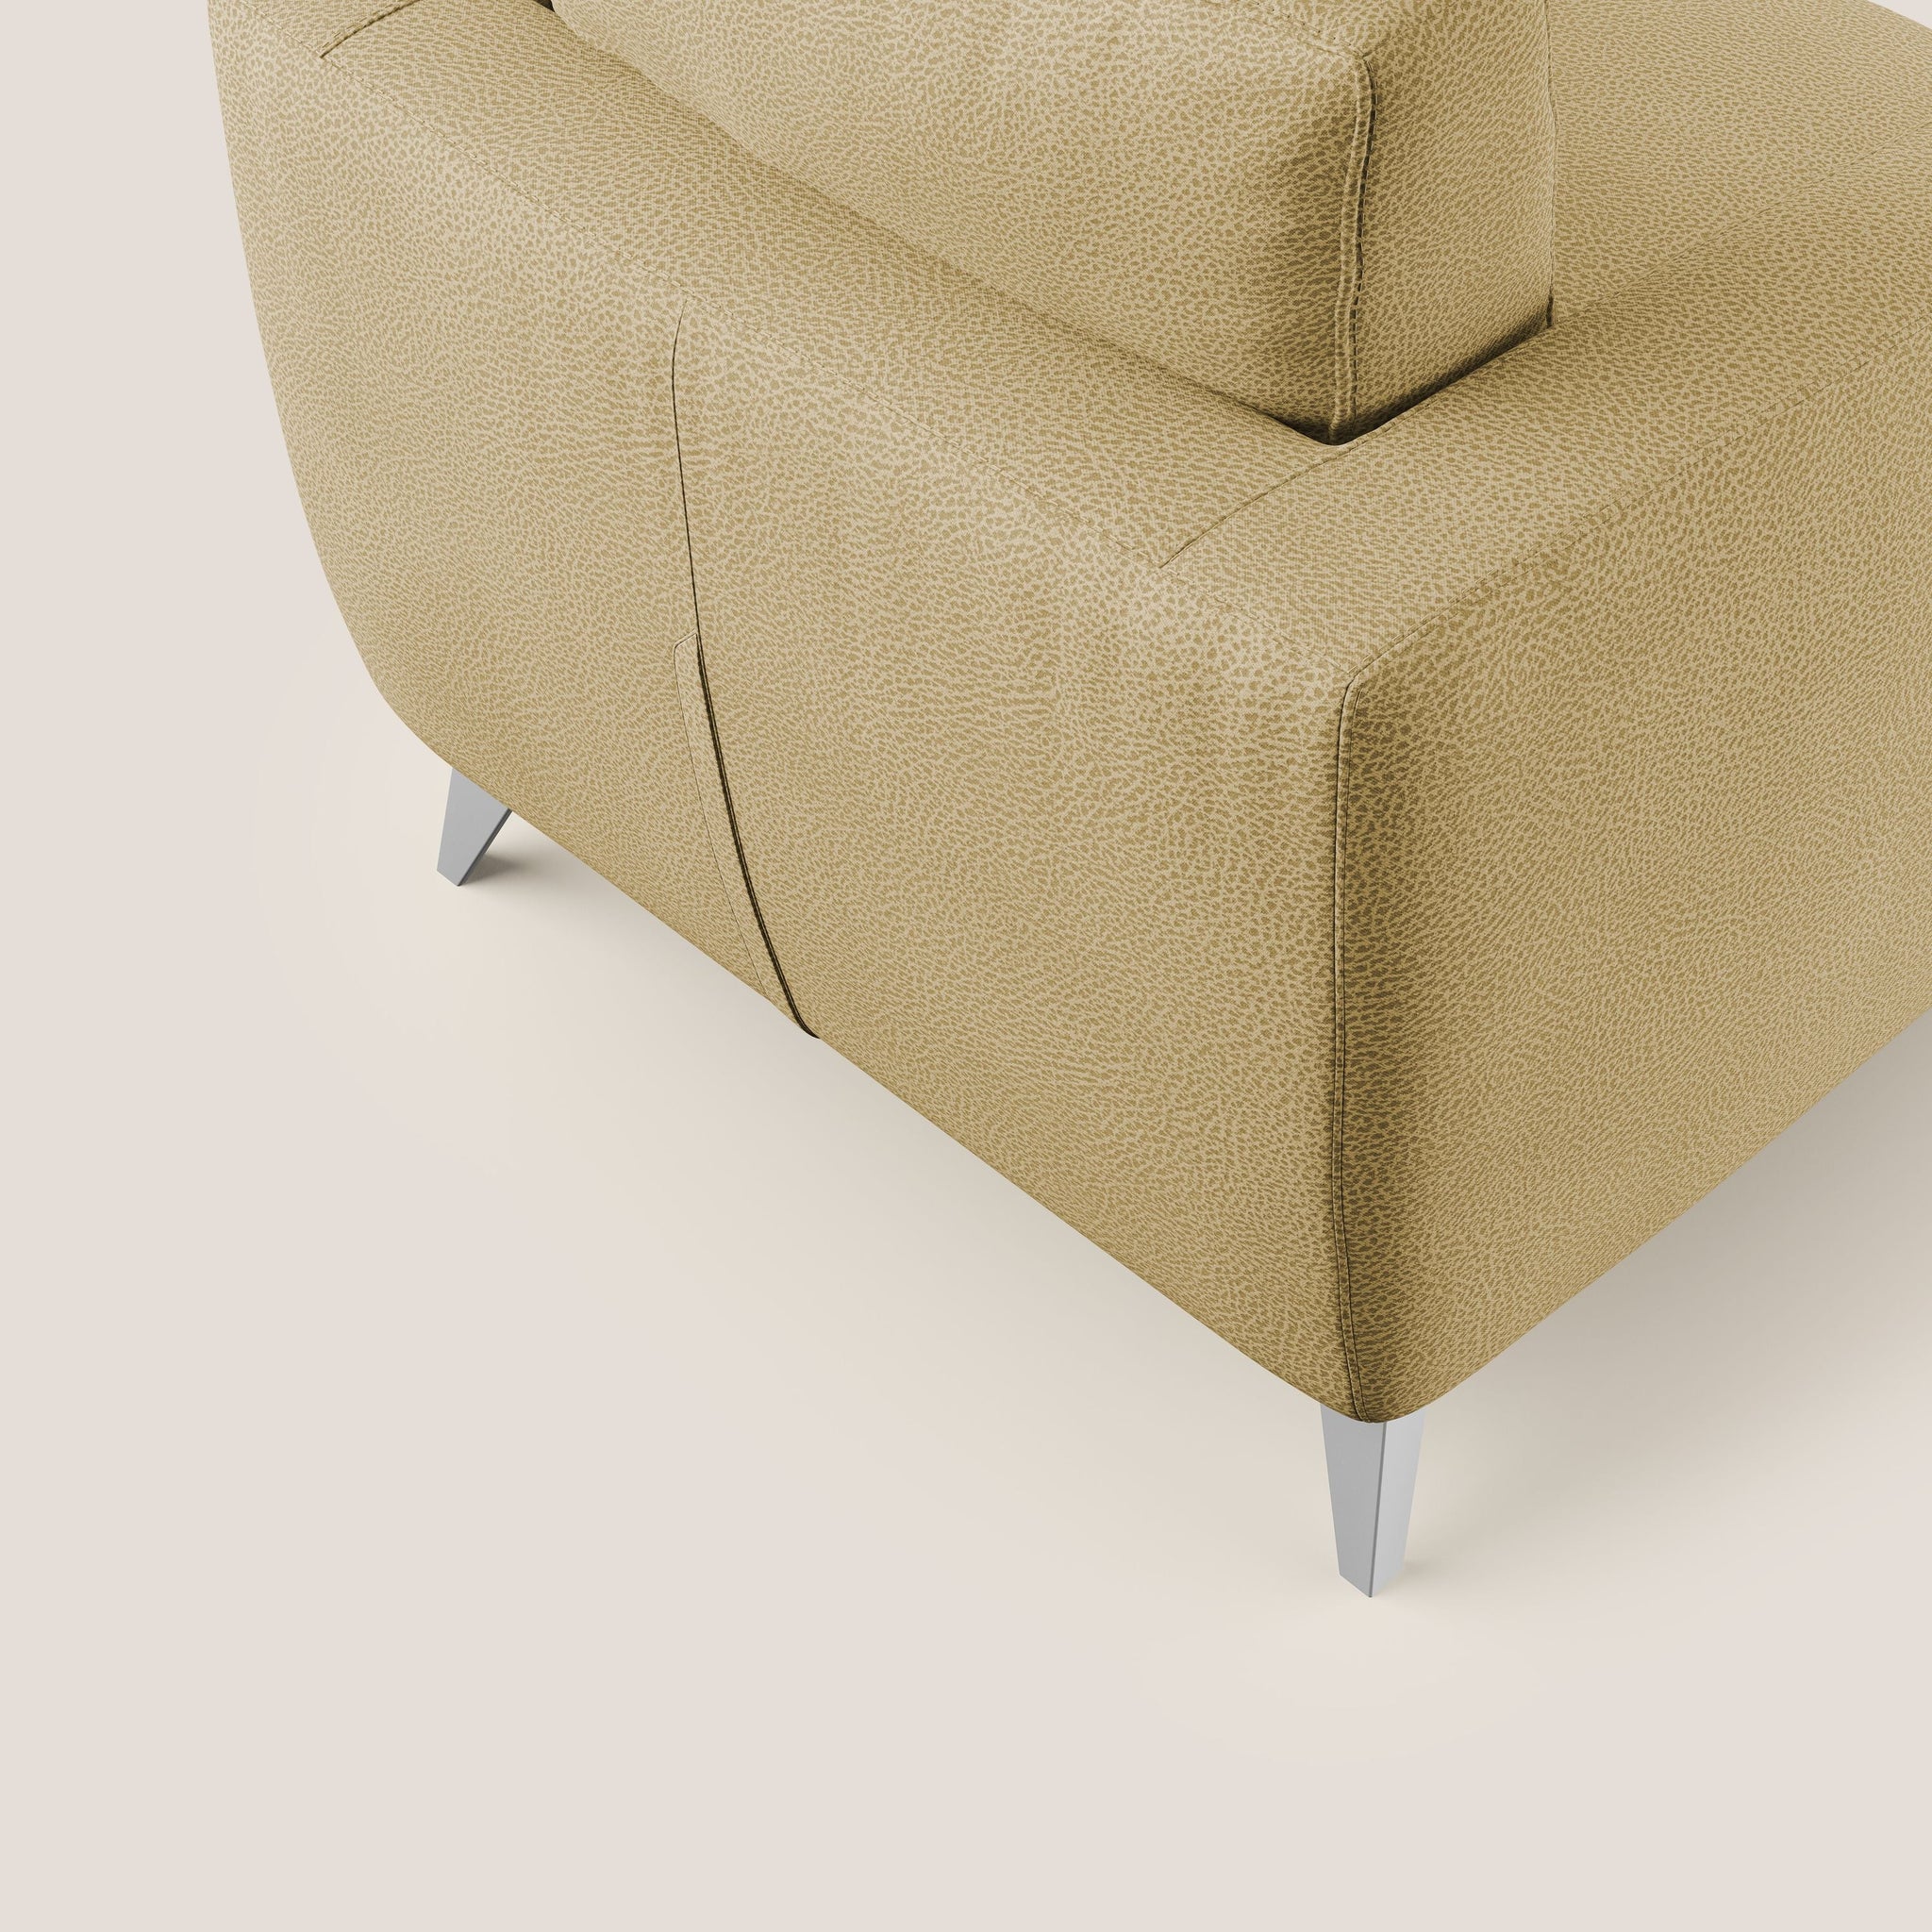 Orione fauteuil en microfibre détachable simili cuir T15